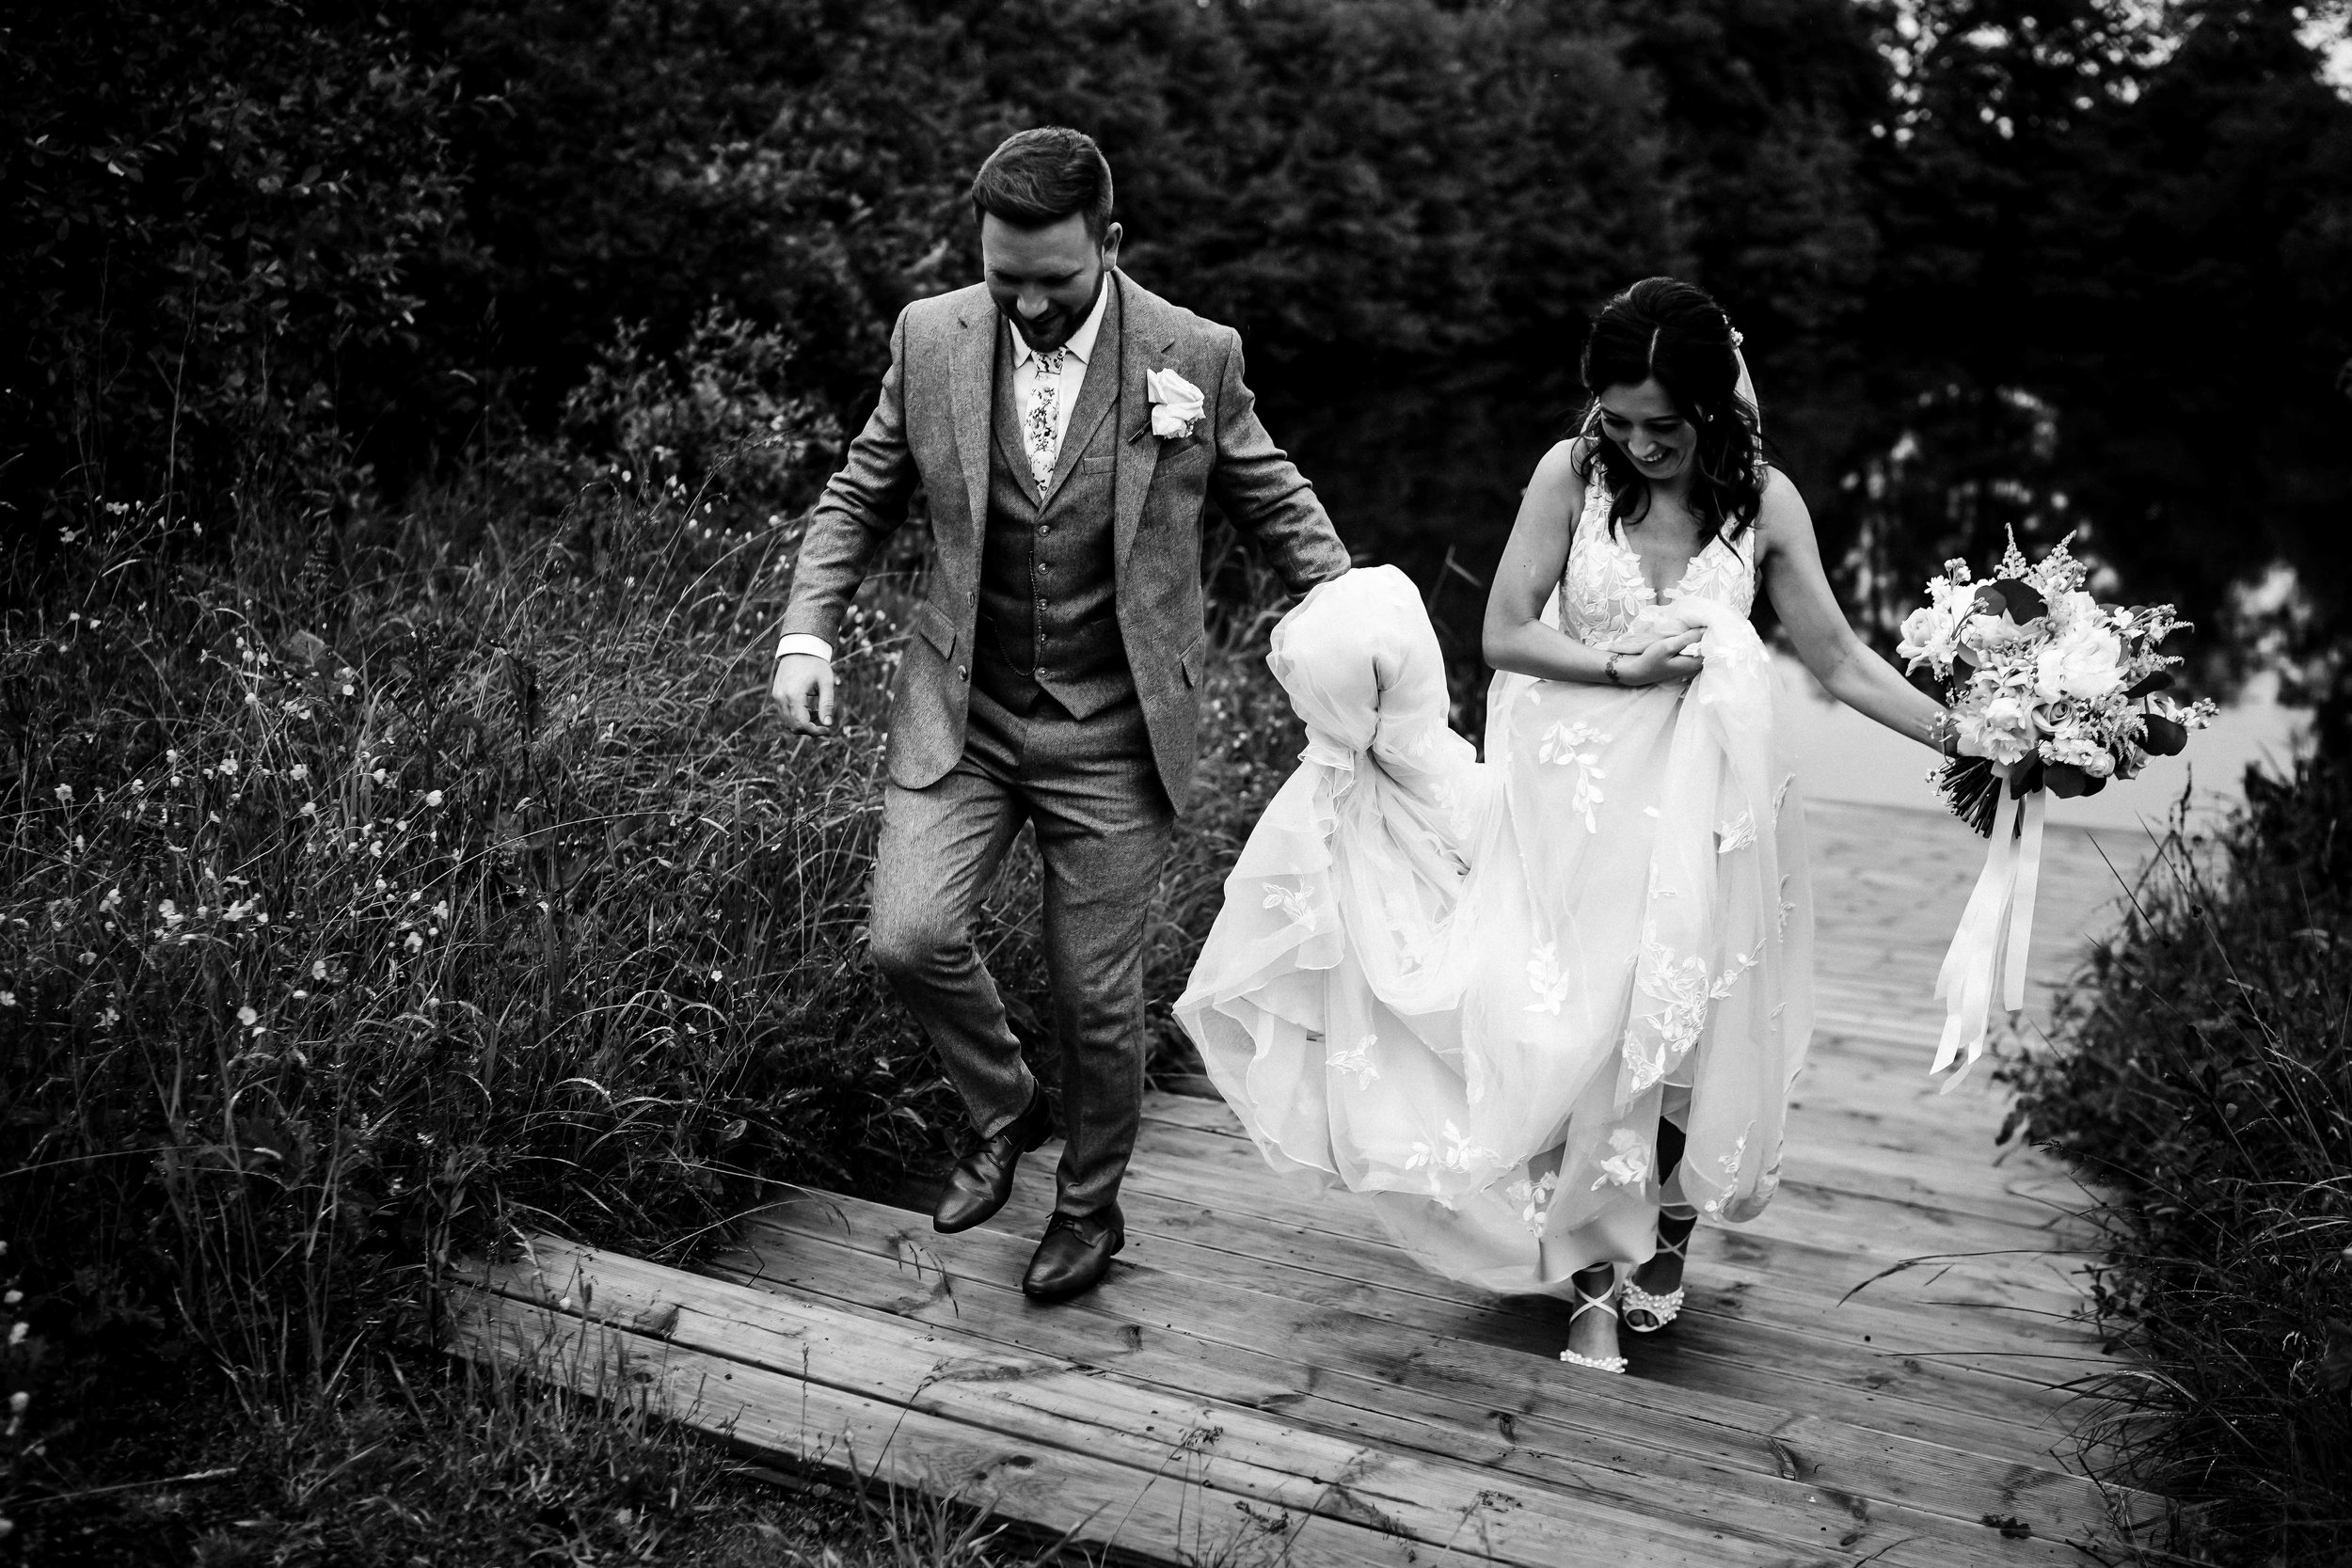 styal lodge wedding photography cheshire wedding photographer - 042.jpg